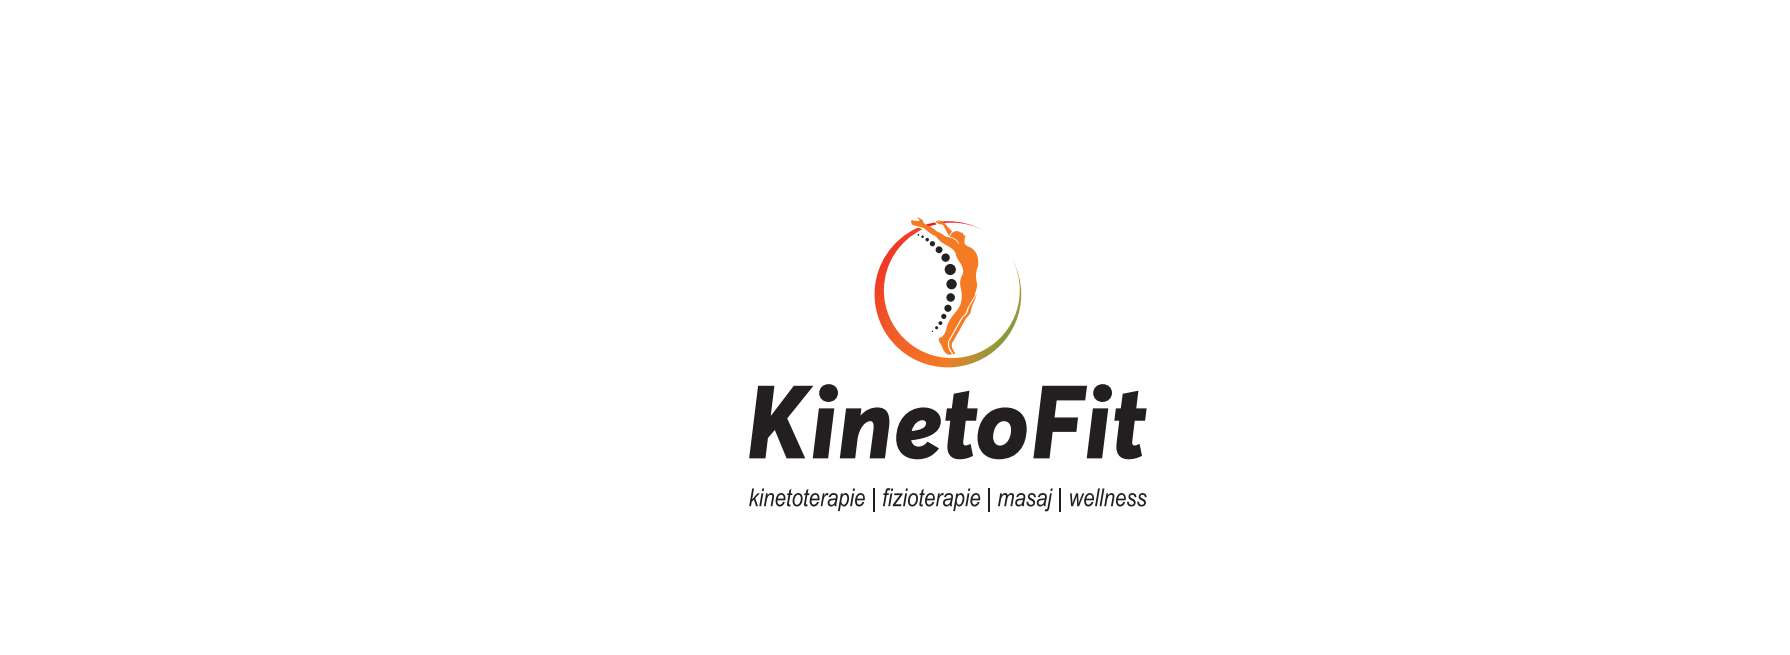 KinetoFit